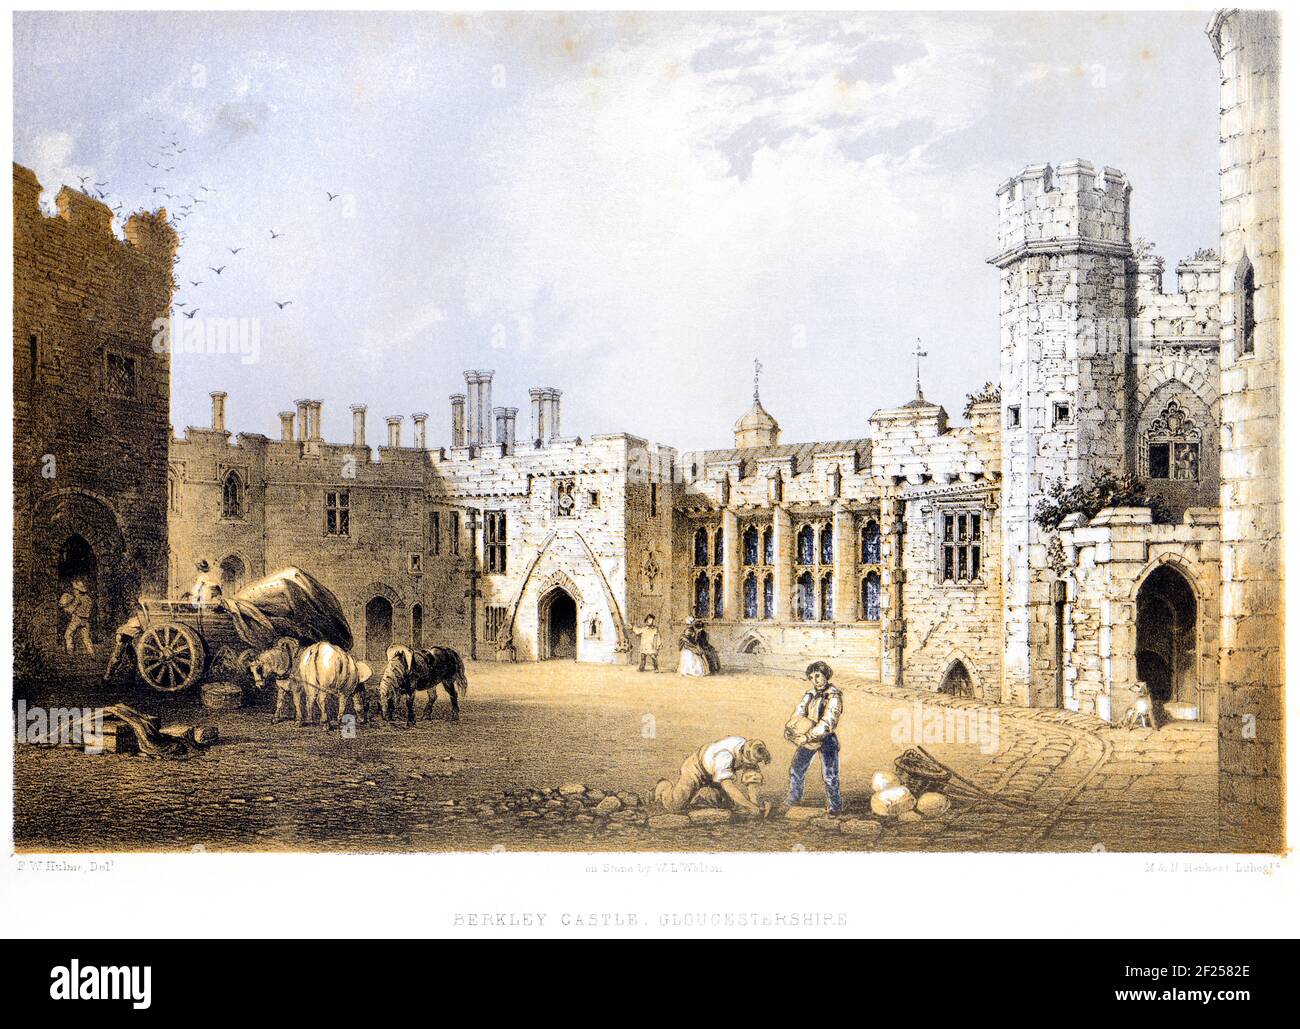 Eine Lithotinte von Berkeley Castle, Gloucestershire UK, scannte mit hoher Auflösung von einem Buch, das 1858 gedruckt wurde. Der Künstler F W Hulme starb 1884. Diese ima Stockfoto